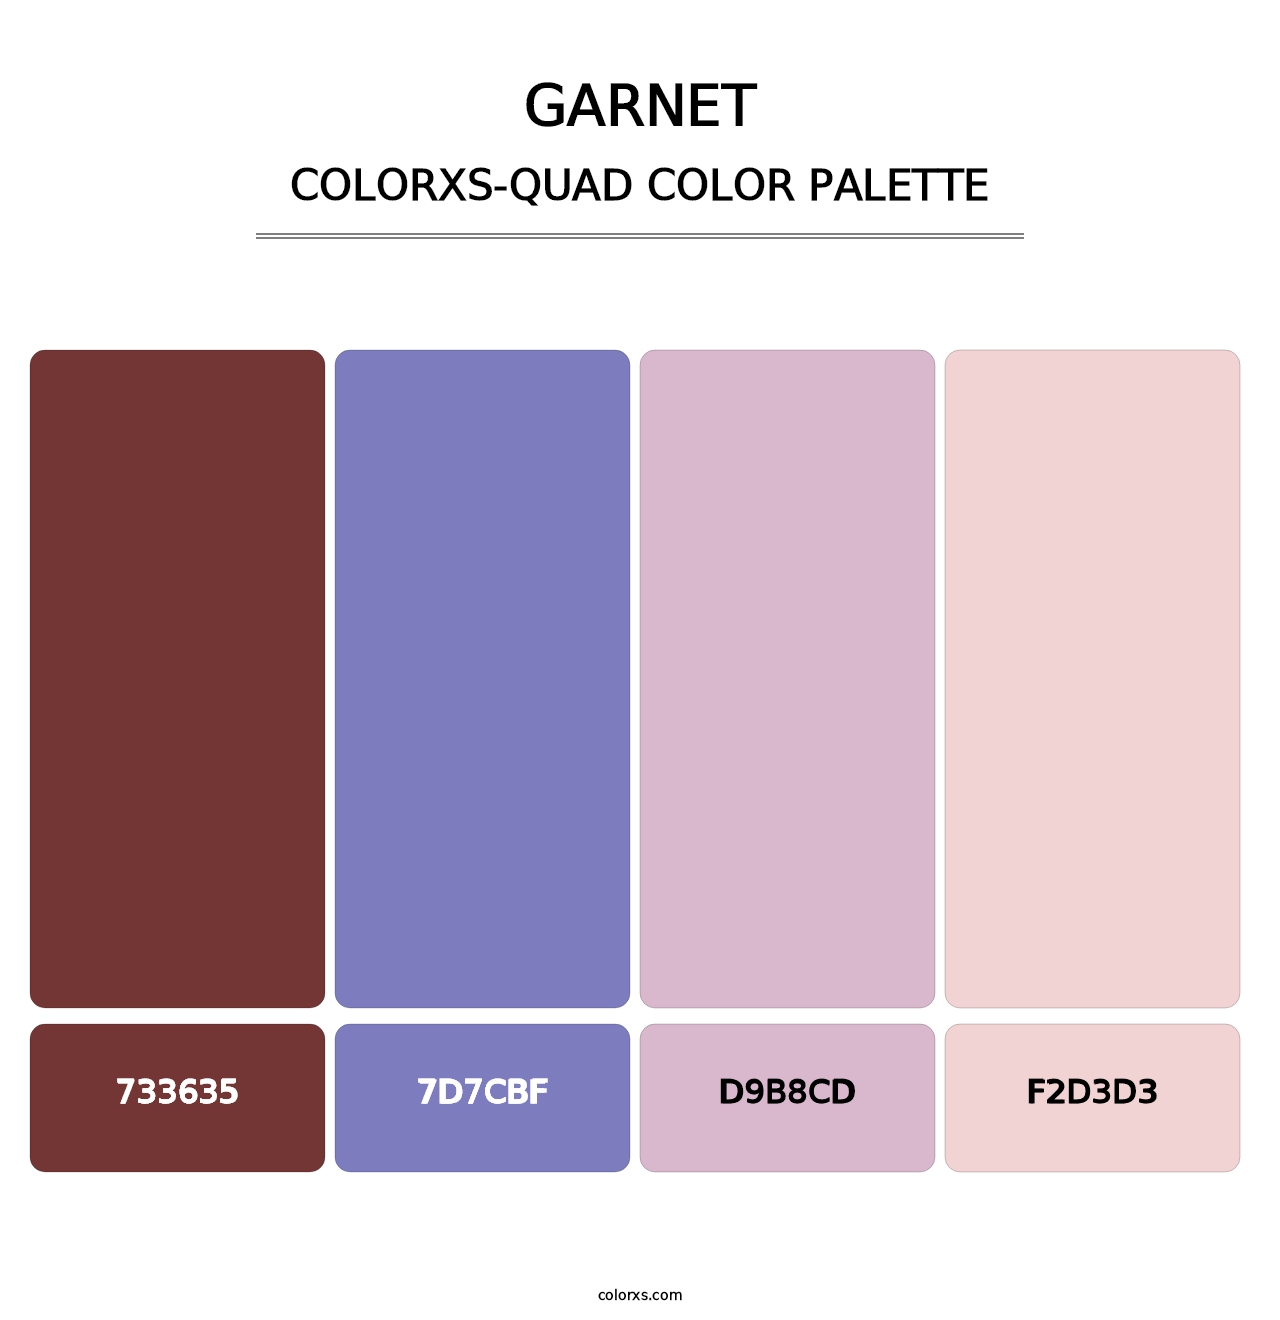 Garnet - Colorxs Quad Palette